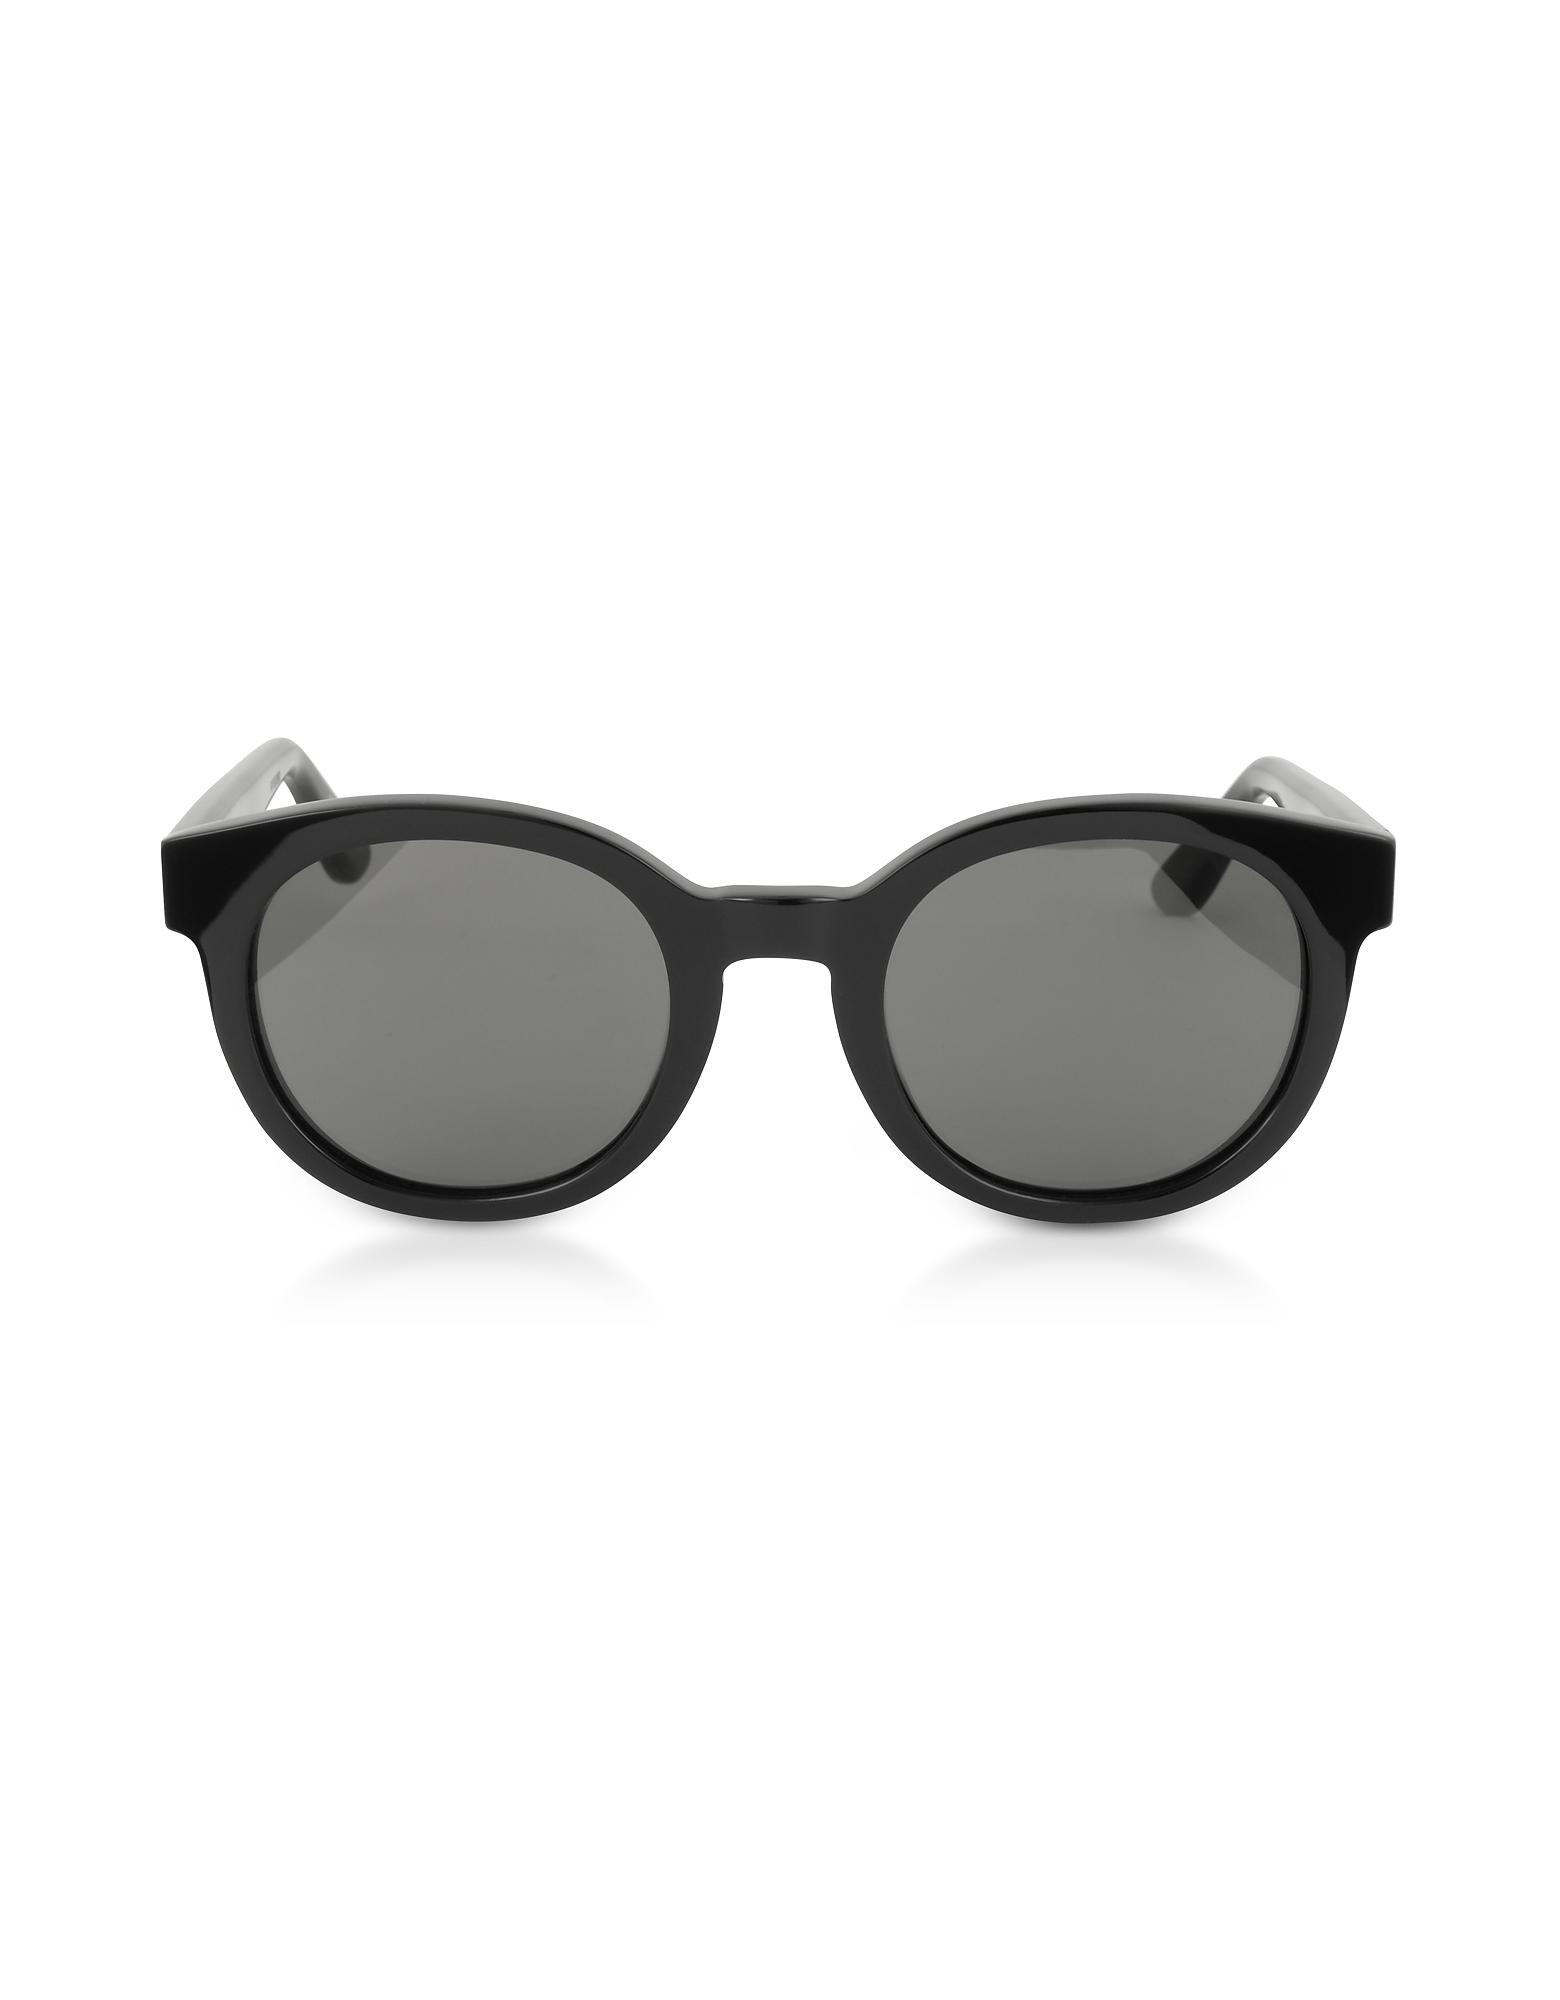 Saint Laurent Sl M15 001 Round Frame Acetate Sunglasses in Gray - Lyst